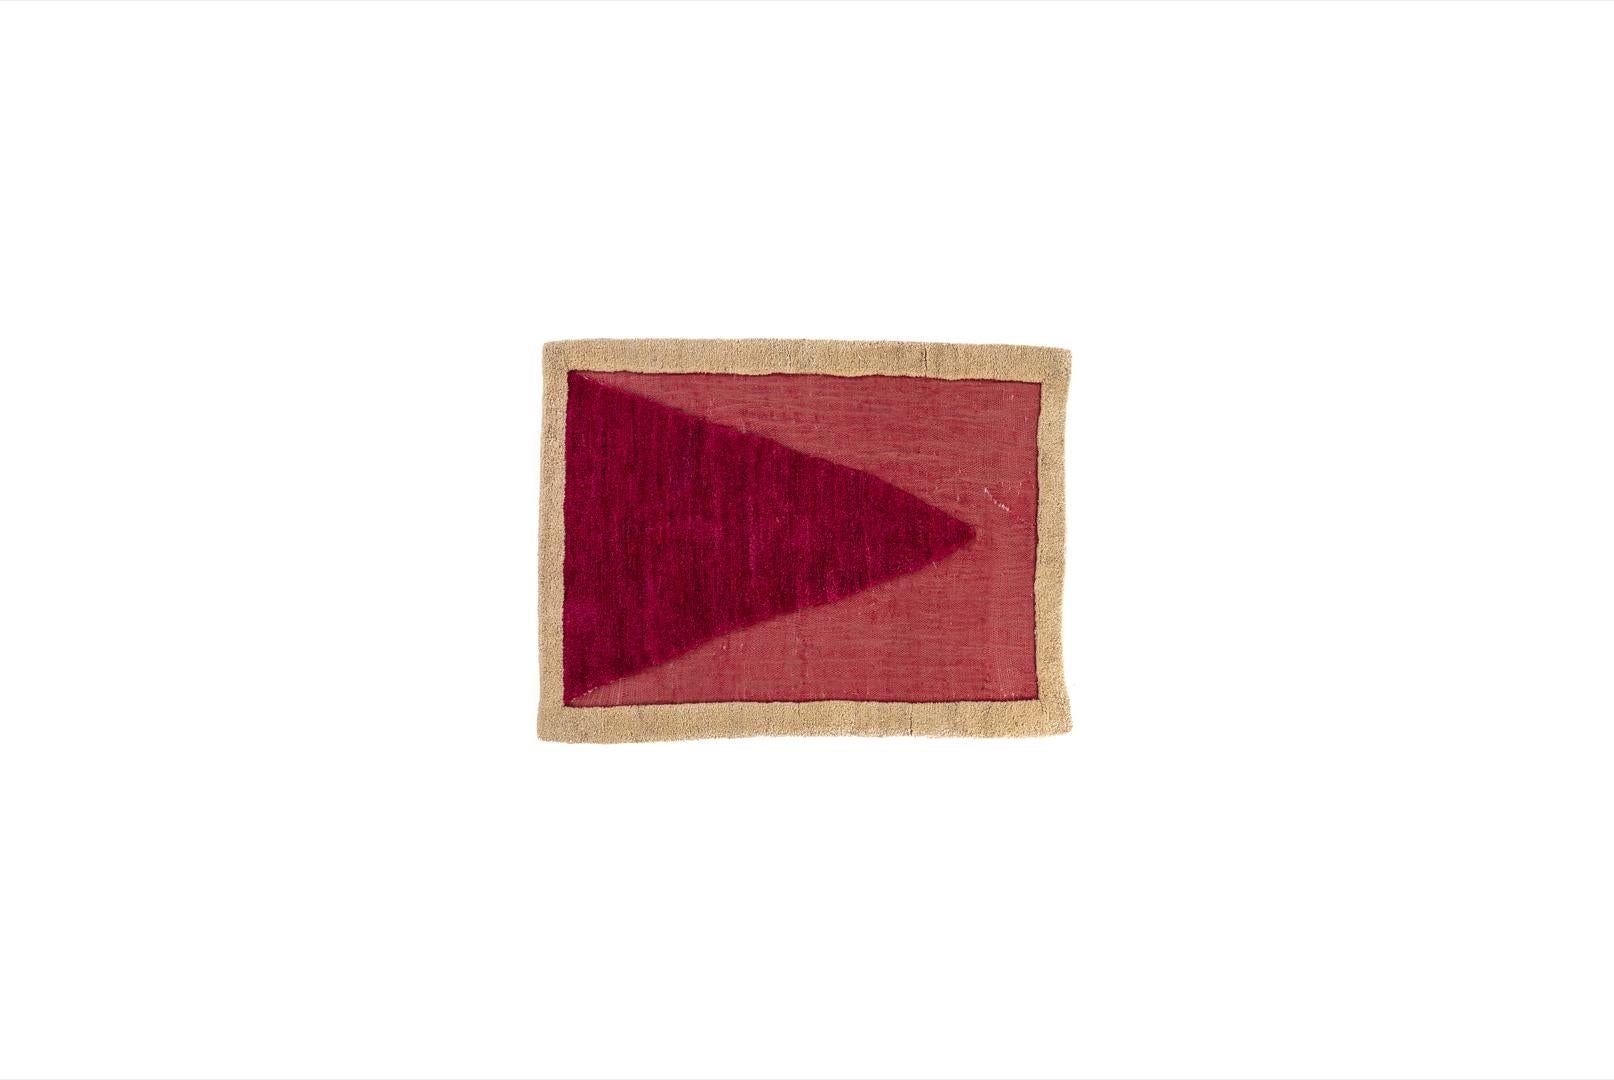 Gabbeh Gewebter Teppich mit Spitzen von Taher Asad Bakhtiari
Abmessungen: B 200 x L 250 cm
MATERIALIEN: Wolle, Spitze

Taher Asad-Bakhtiari (B.1982, Teheran) ist ein autodidaktischer Künstler, dessen Praxis sich auf Objekte, Textilien und